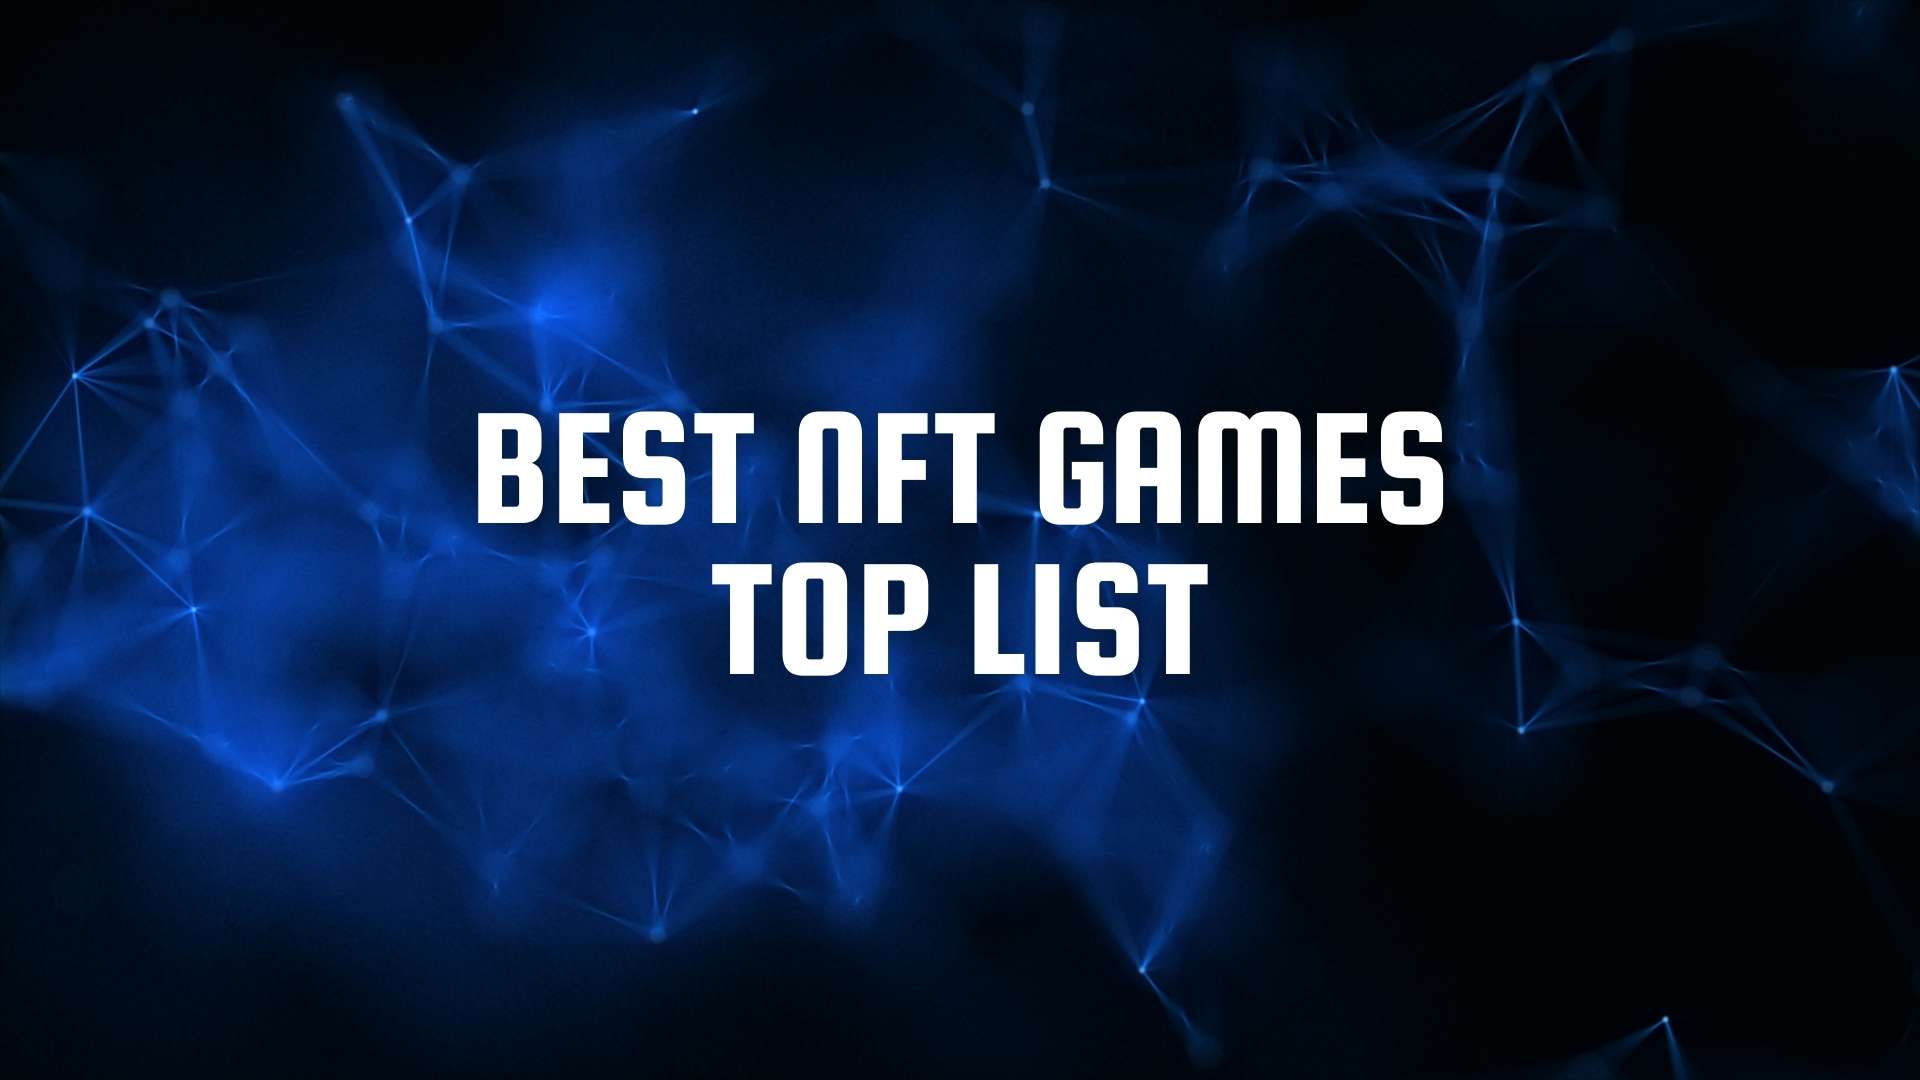 Best NFT Games Top List